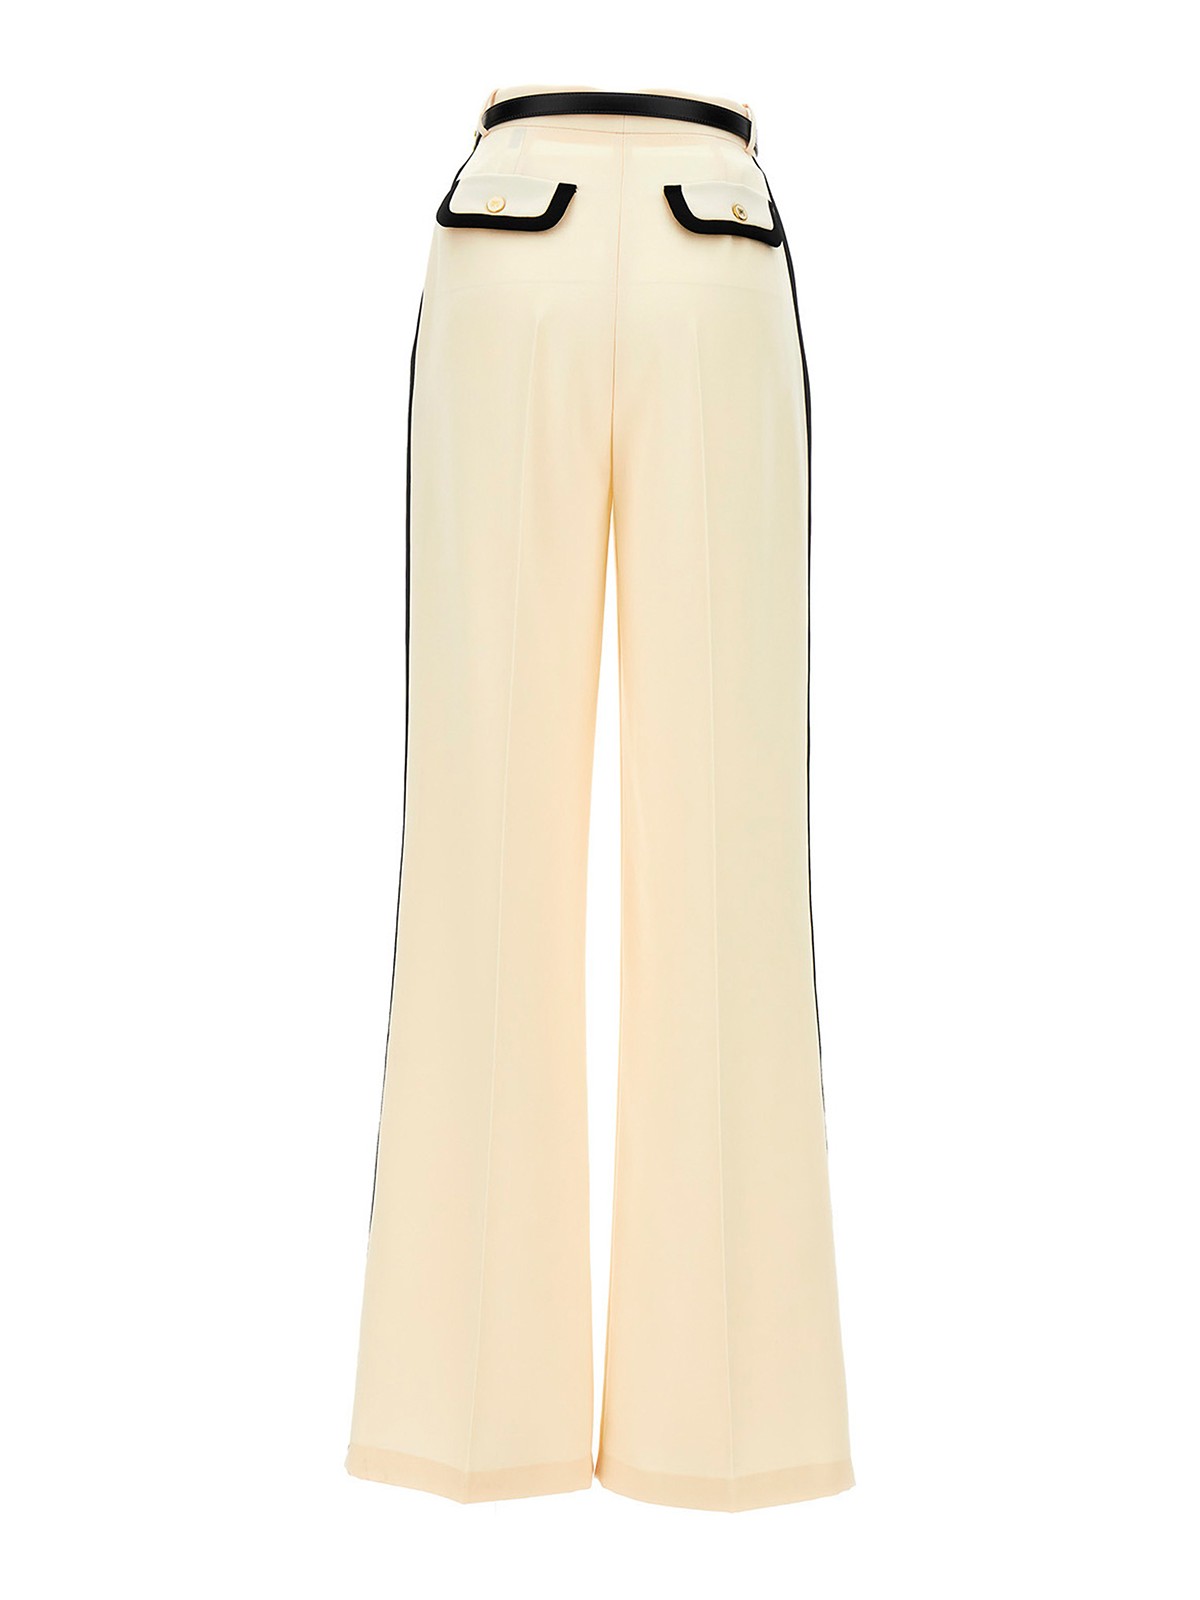 DOLCE & GABBANA Pants Cream Lace High Waist Palazzo Cropped IT44/US10/L  $4000 | eBay